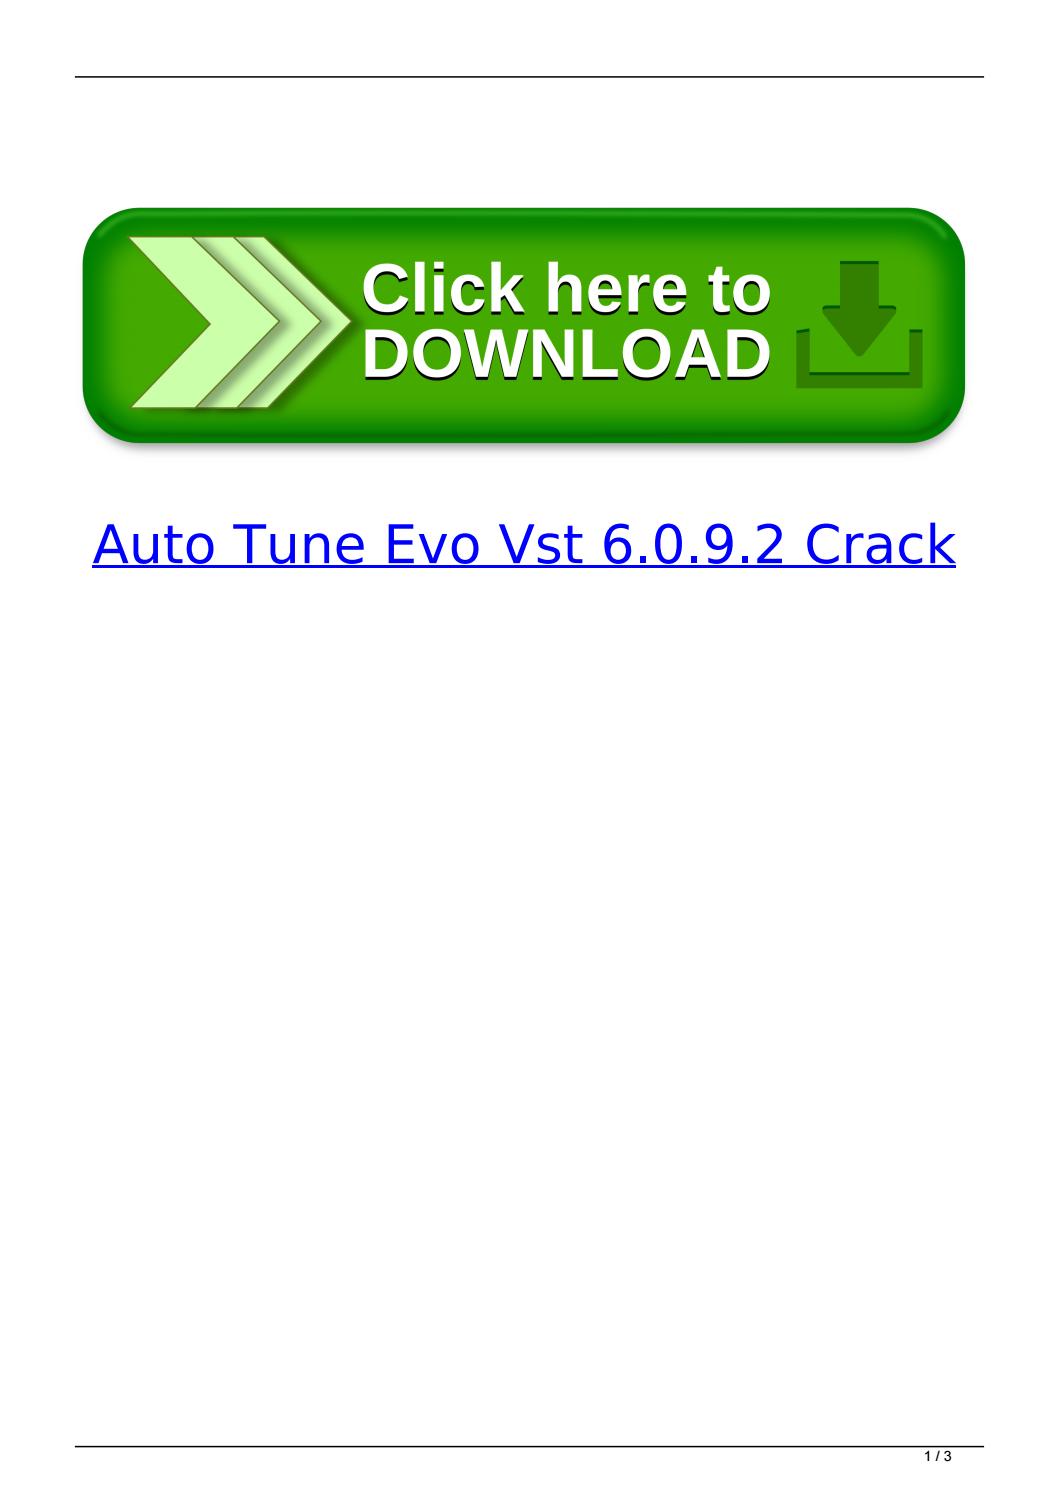 Auto Tune Evo Vst Version 6.0.9 Crack